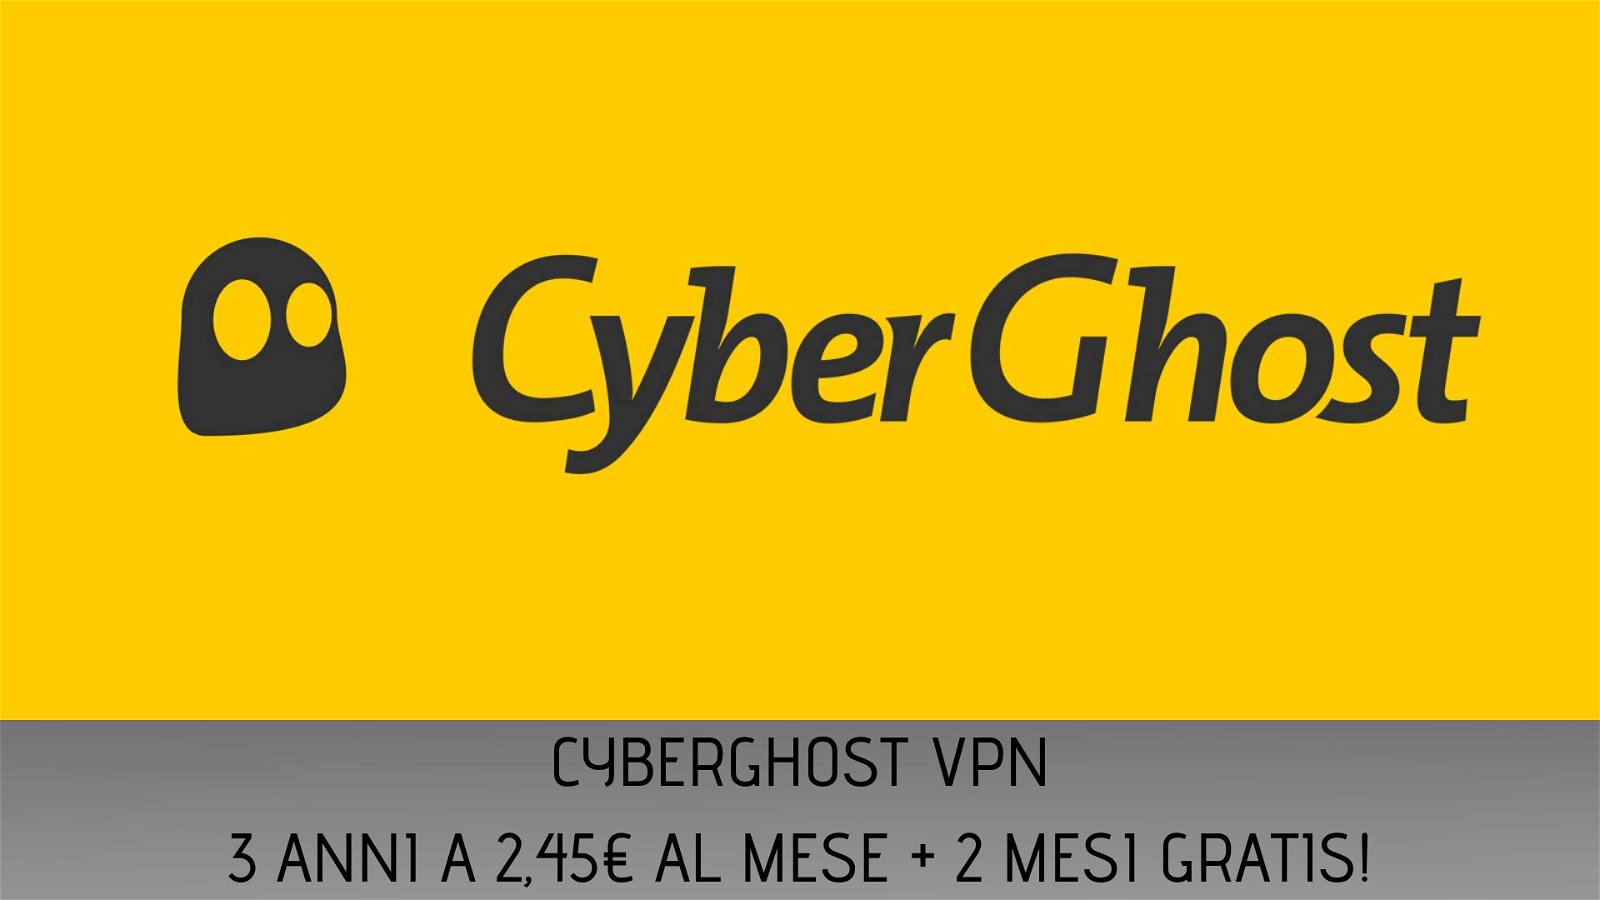 Immagine di CyberGhost VPN: 3 anni a 2,64€ al mese più due mesi gratis